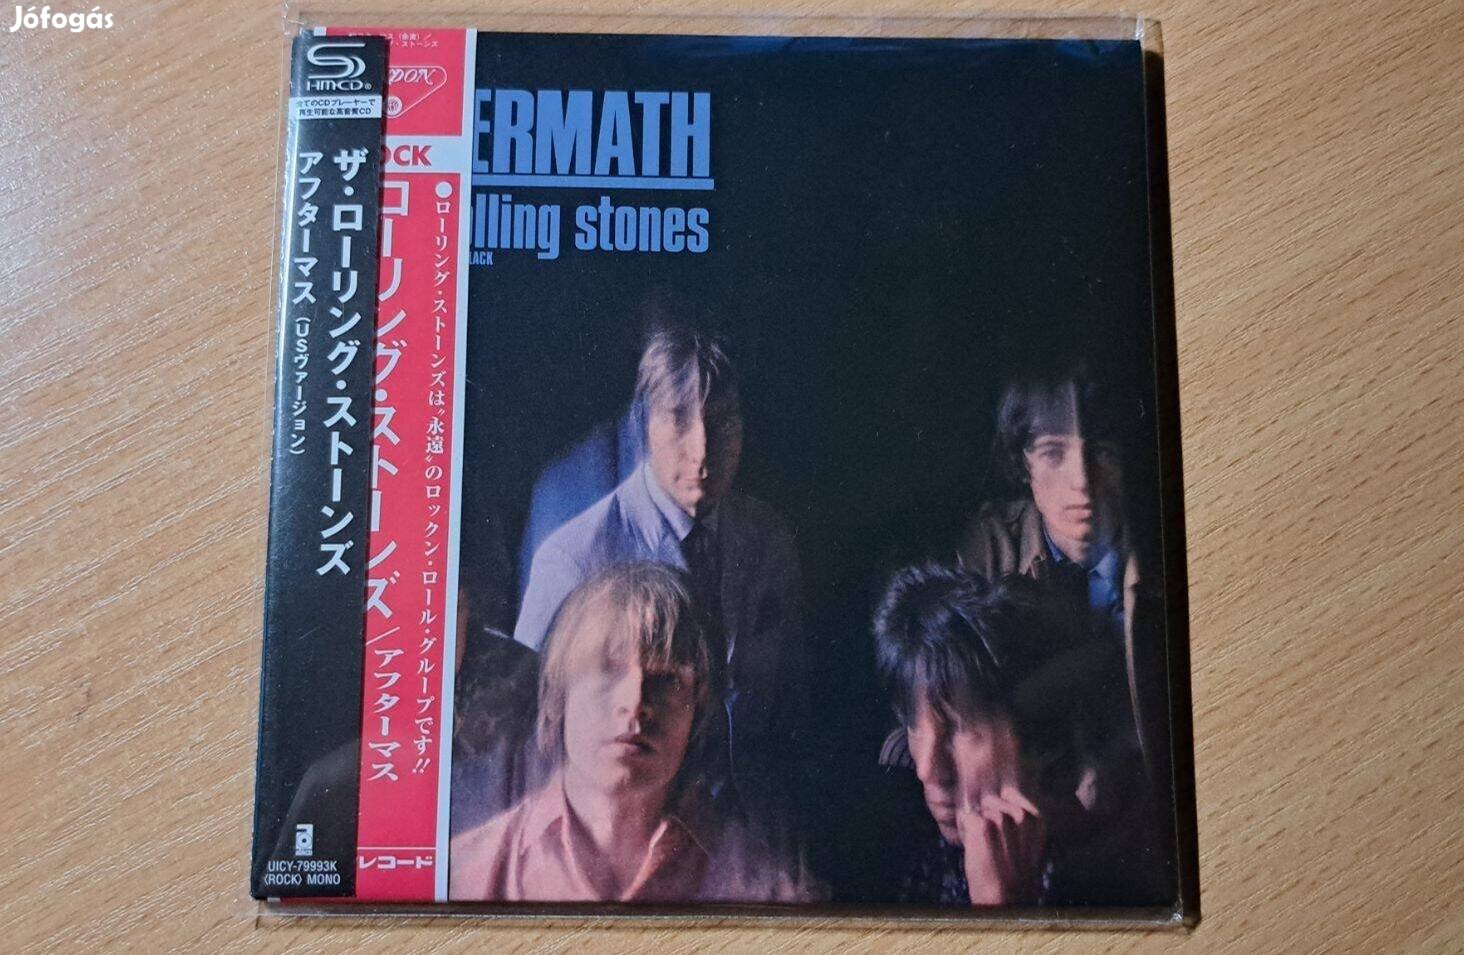 Rolling Stones - Aftermath - CD (bontatlan japán kiadás)